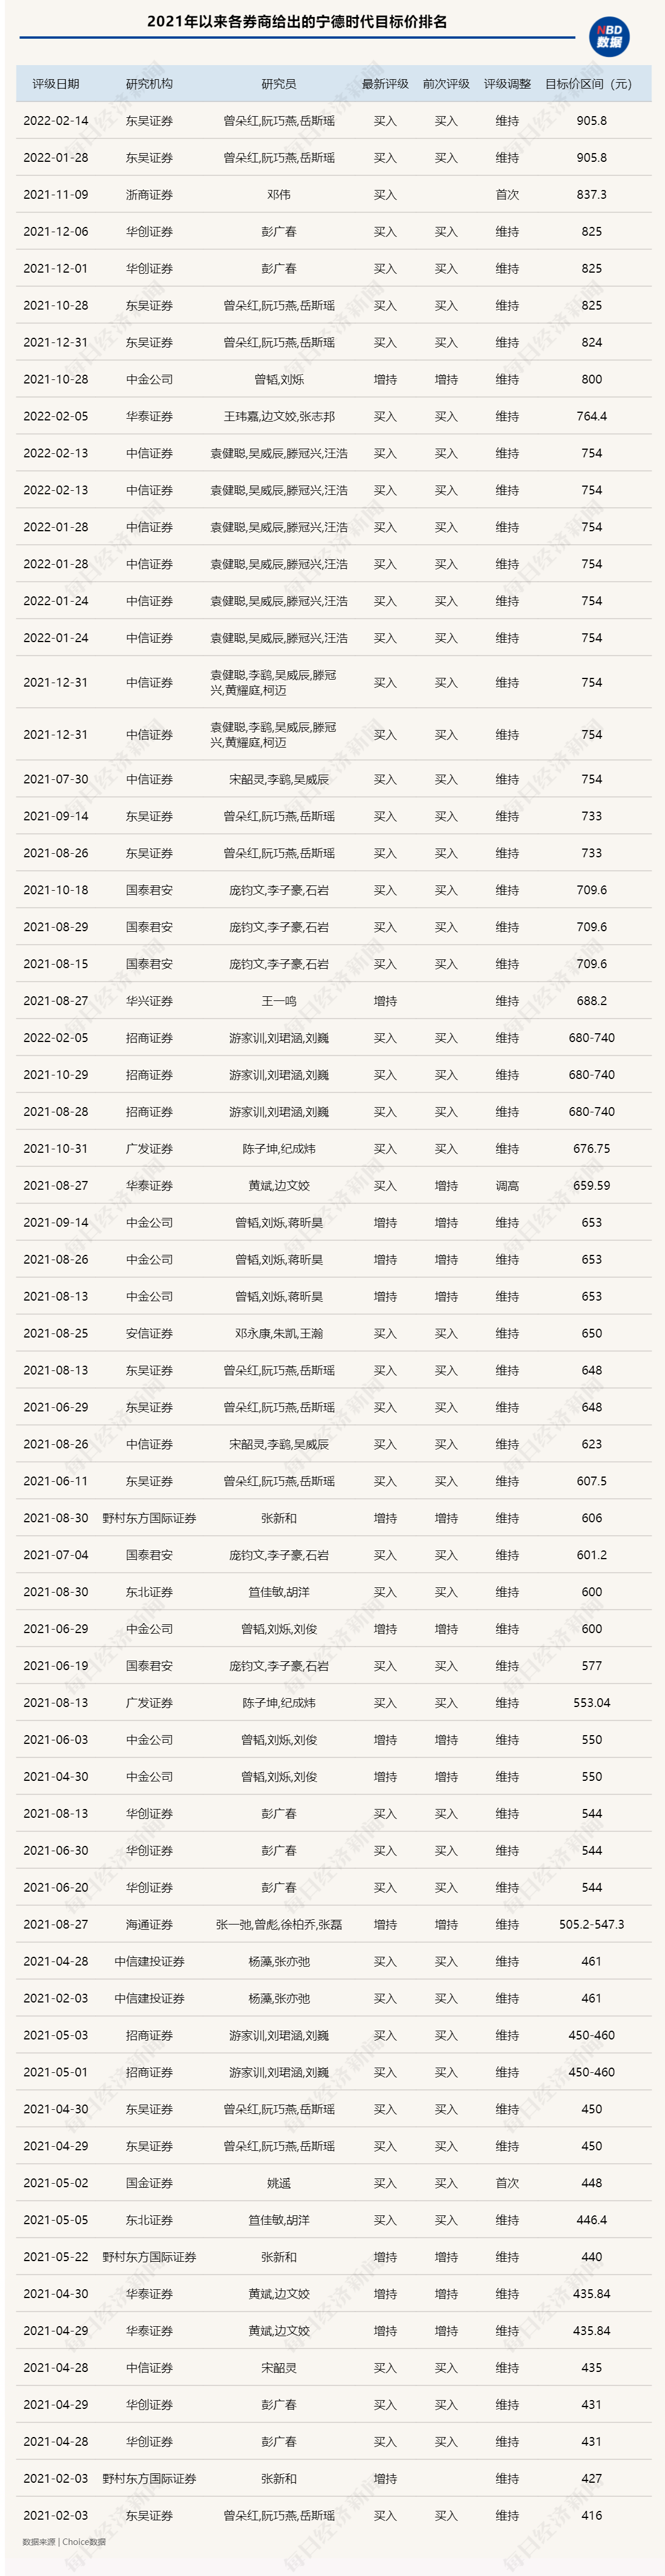 “东吴证券2022年策略年会：现在可能不是买入成长股的好时机 给予“宁王”目标价905.8元